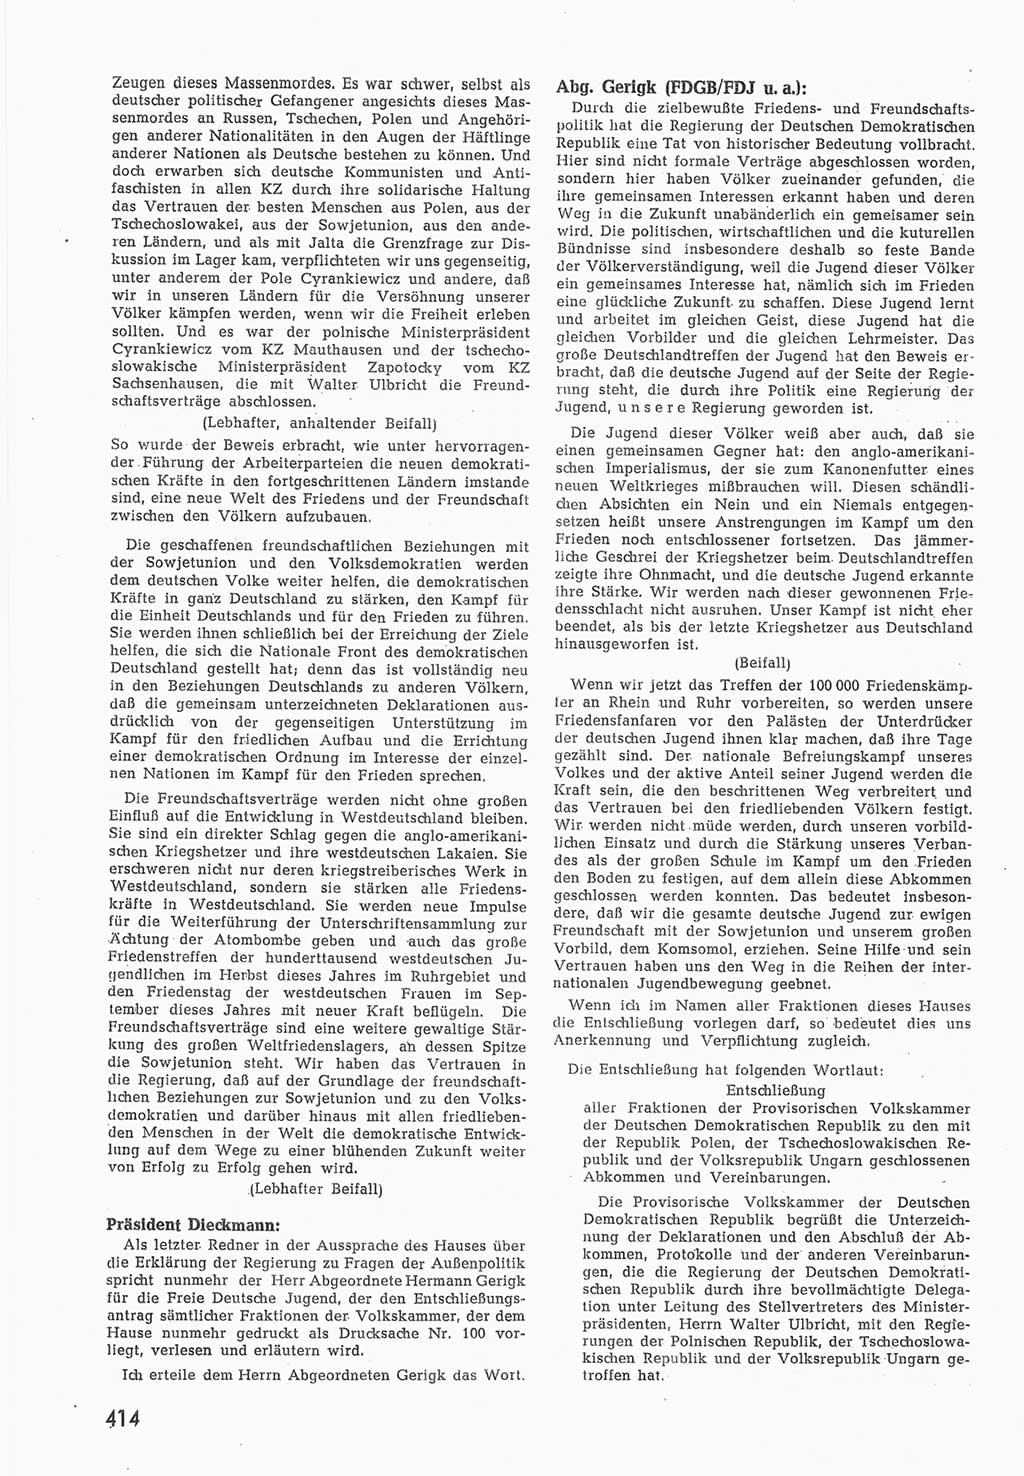 Provisorische Volkskammer (VK) der Deutschen Demokratischen Republik (DDR) 1949-1950, Dokument 432 (Prov. VK DDR 1949-1950, Dok. 432)